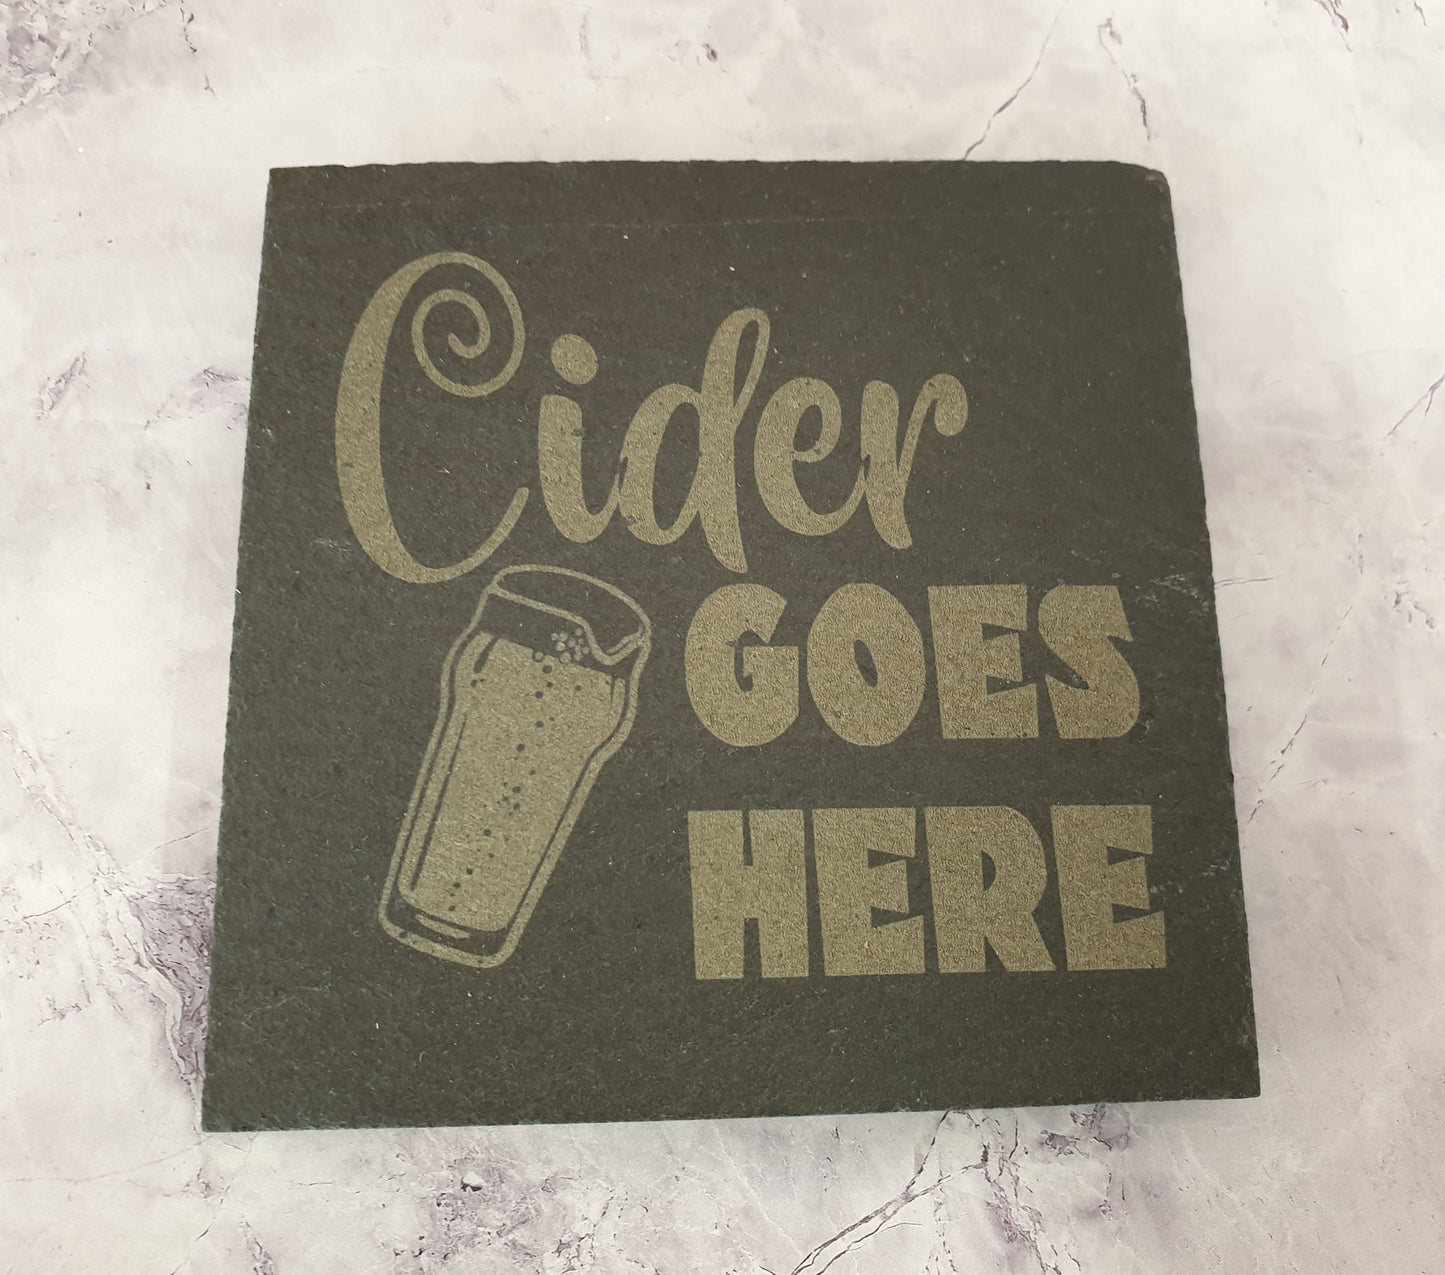 Cider Slate Coaster Gift - Cider Goes Here – Nice Novelty Cute Engraved Slate Mug Cup Coaster Present